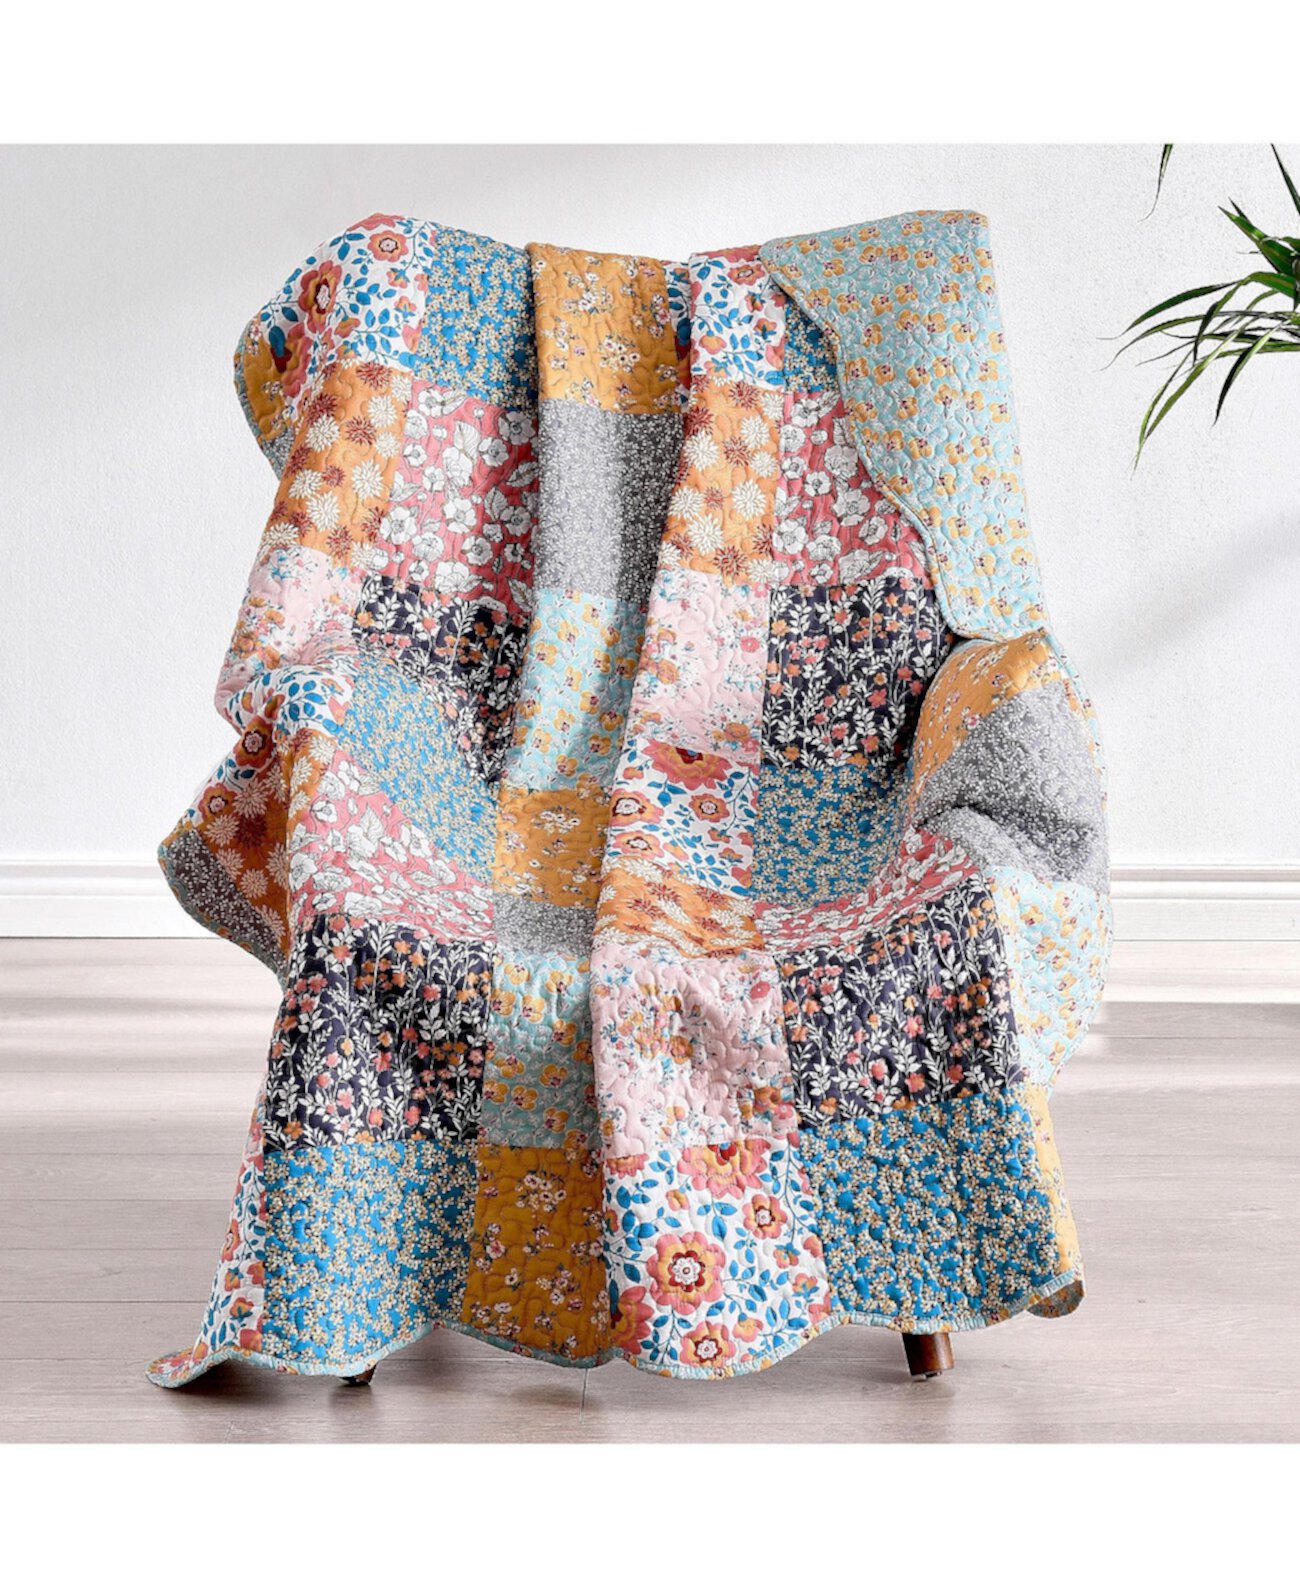 Одеяло Carlie Calico 50 x 60 дюймов Greenland Home Fashions